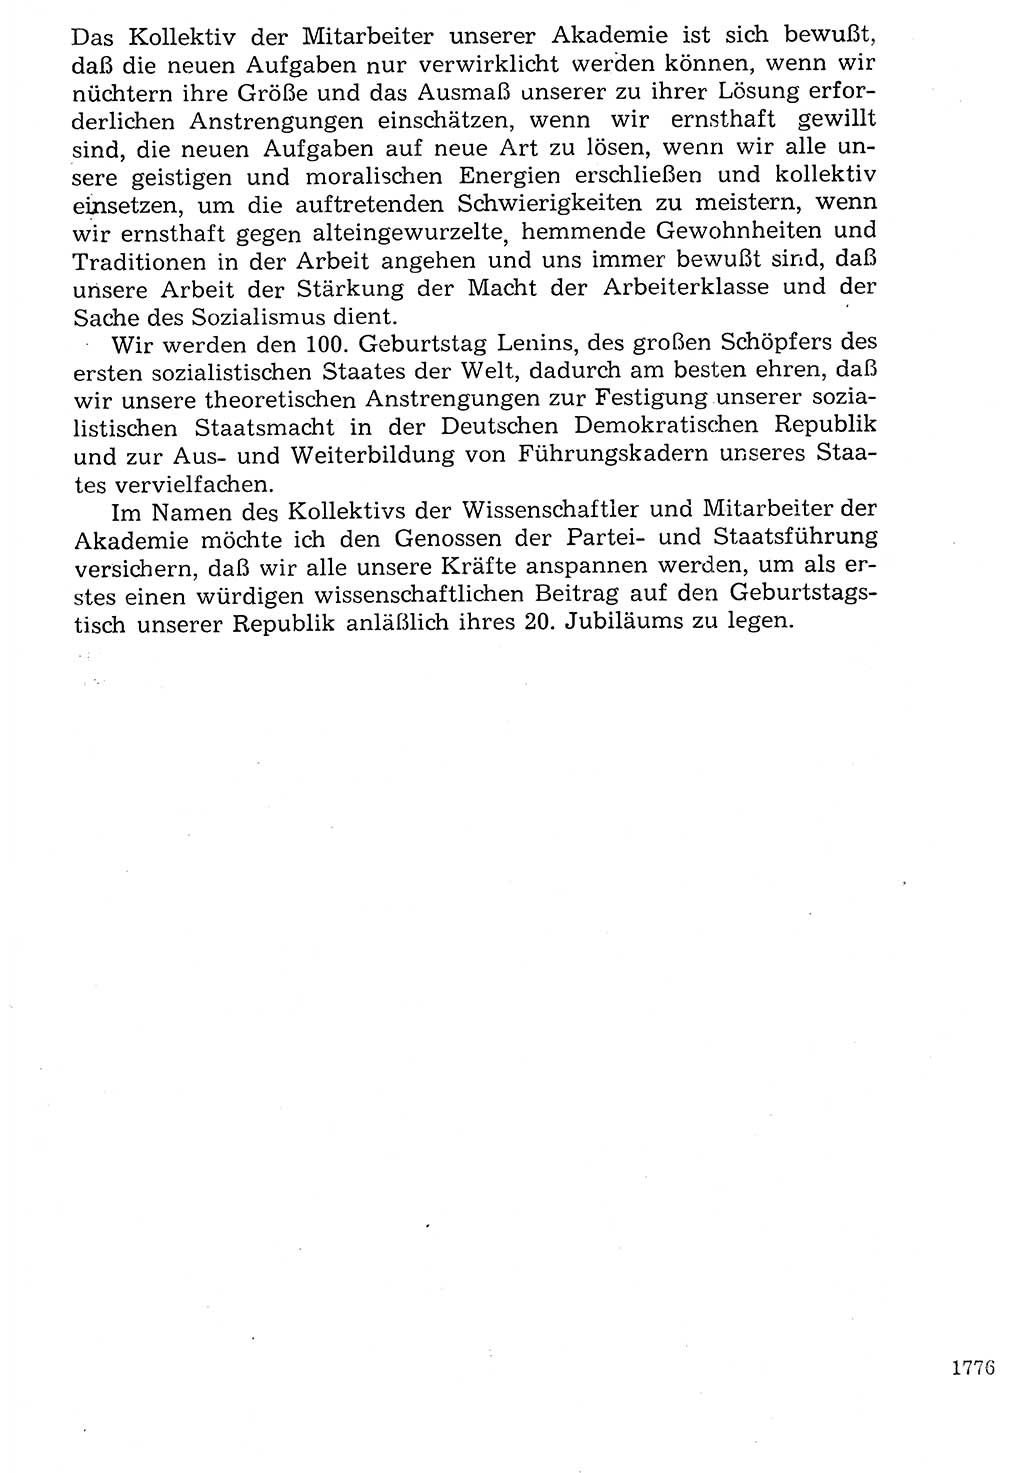 Staat und Recht (StuR), 17. Jahrgang [Deutsche Demokratische Republik (DDR)] 1968, Seite 1776 (StuR DDR 1968, S. 1776)